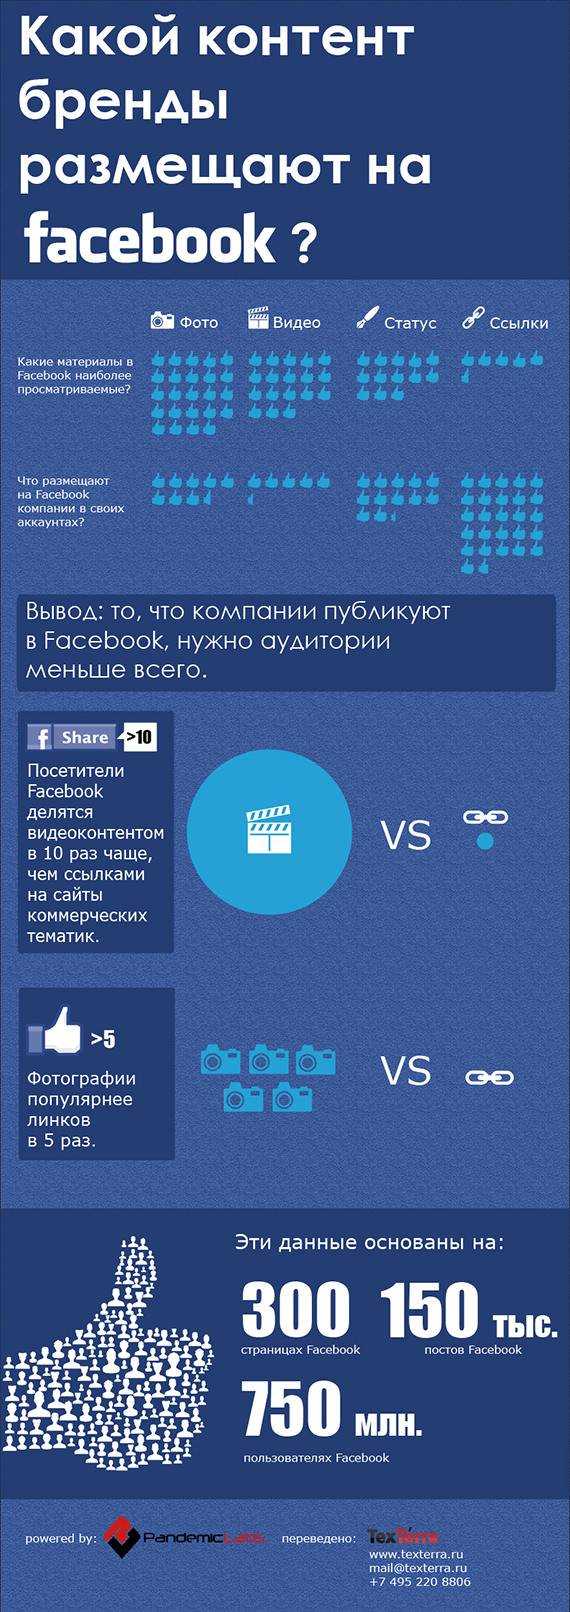 Какой контент размещают бренды на Facebook? (Инфографика)